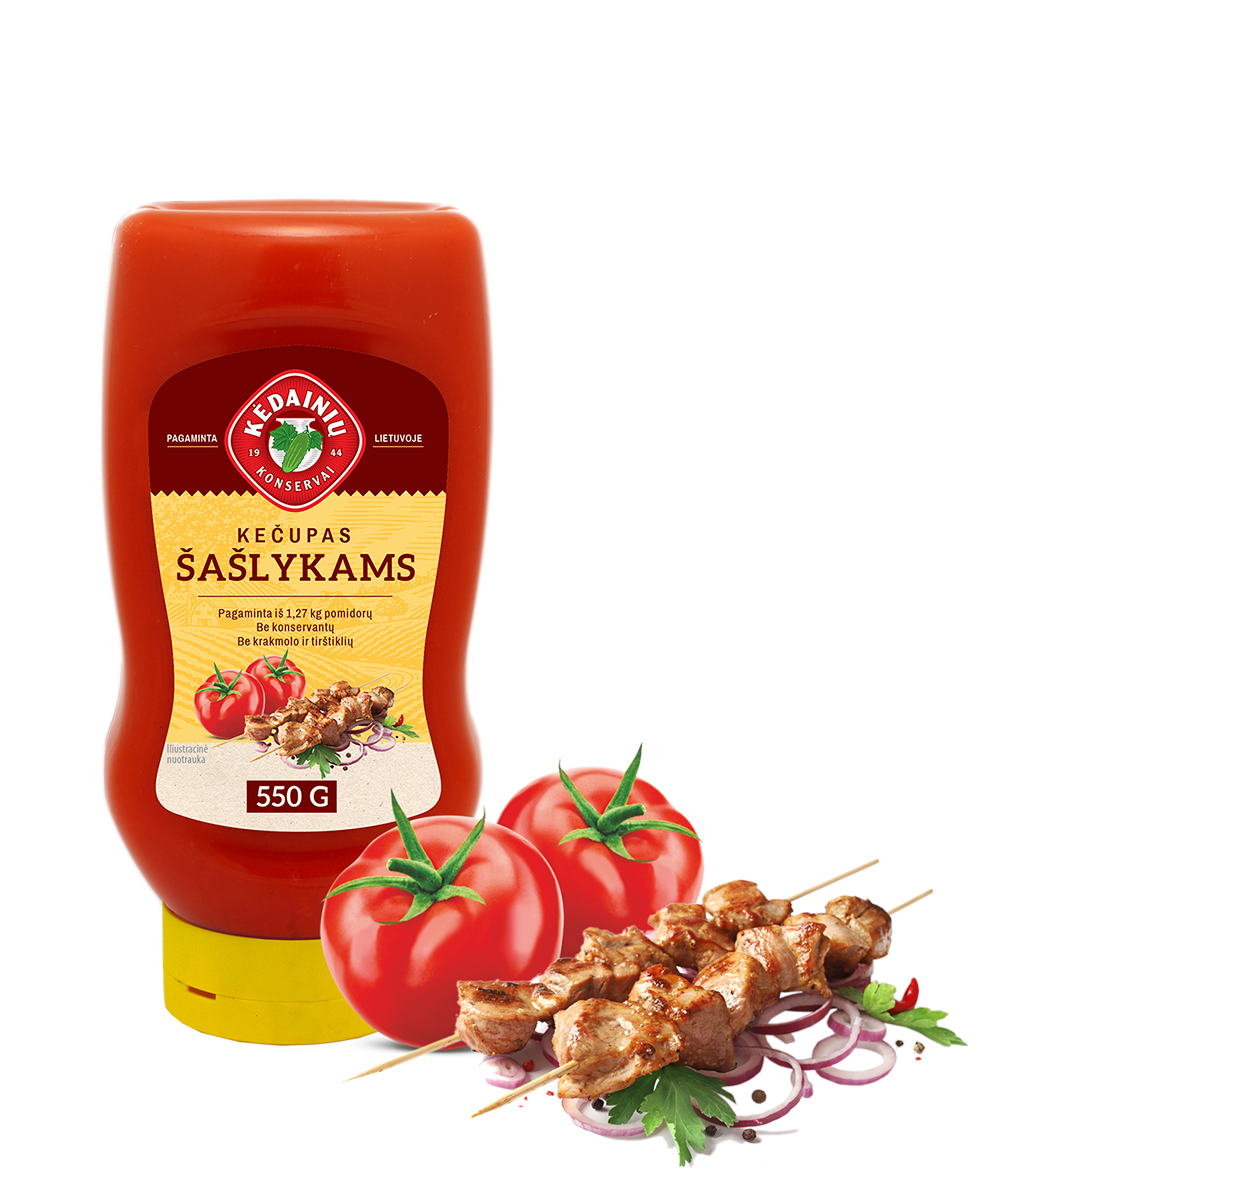 Ketchup for shashliks